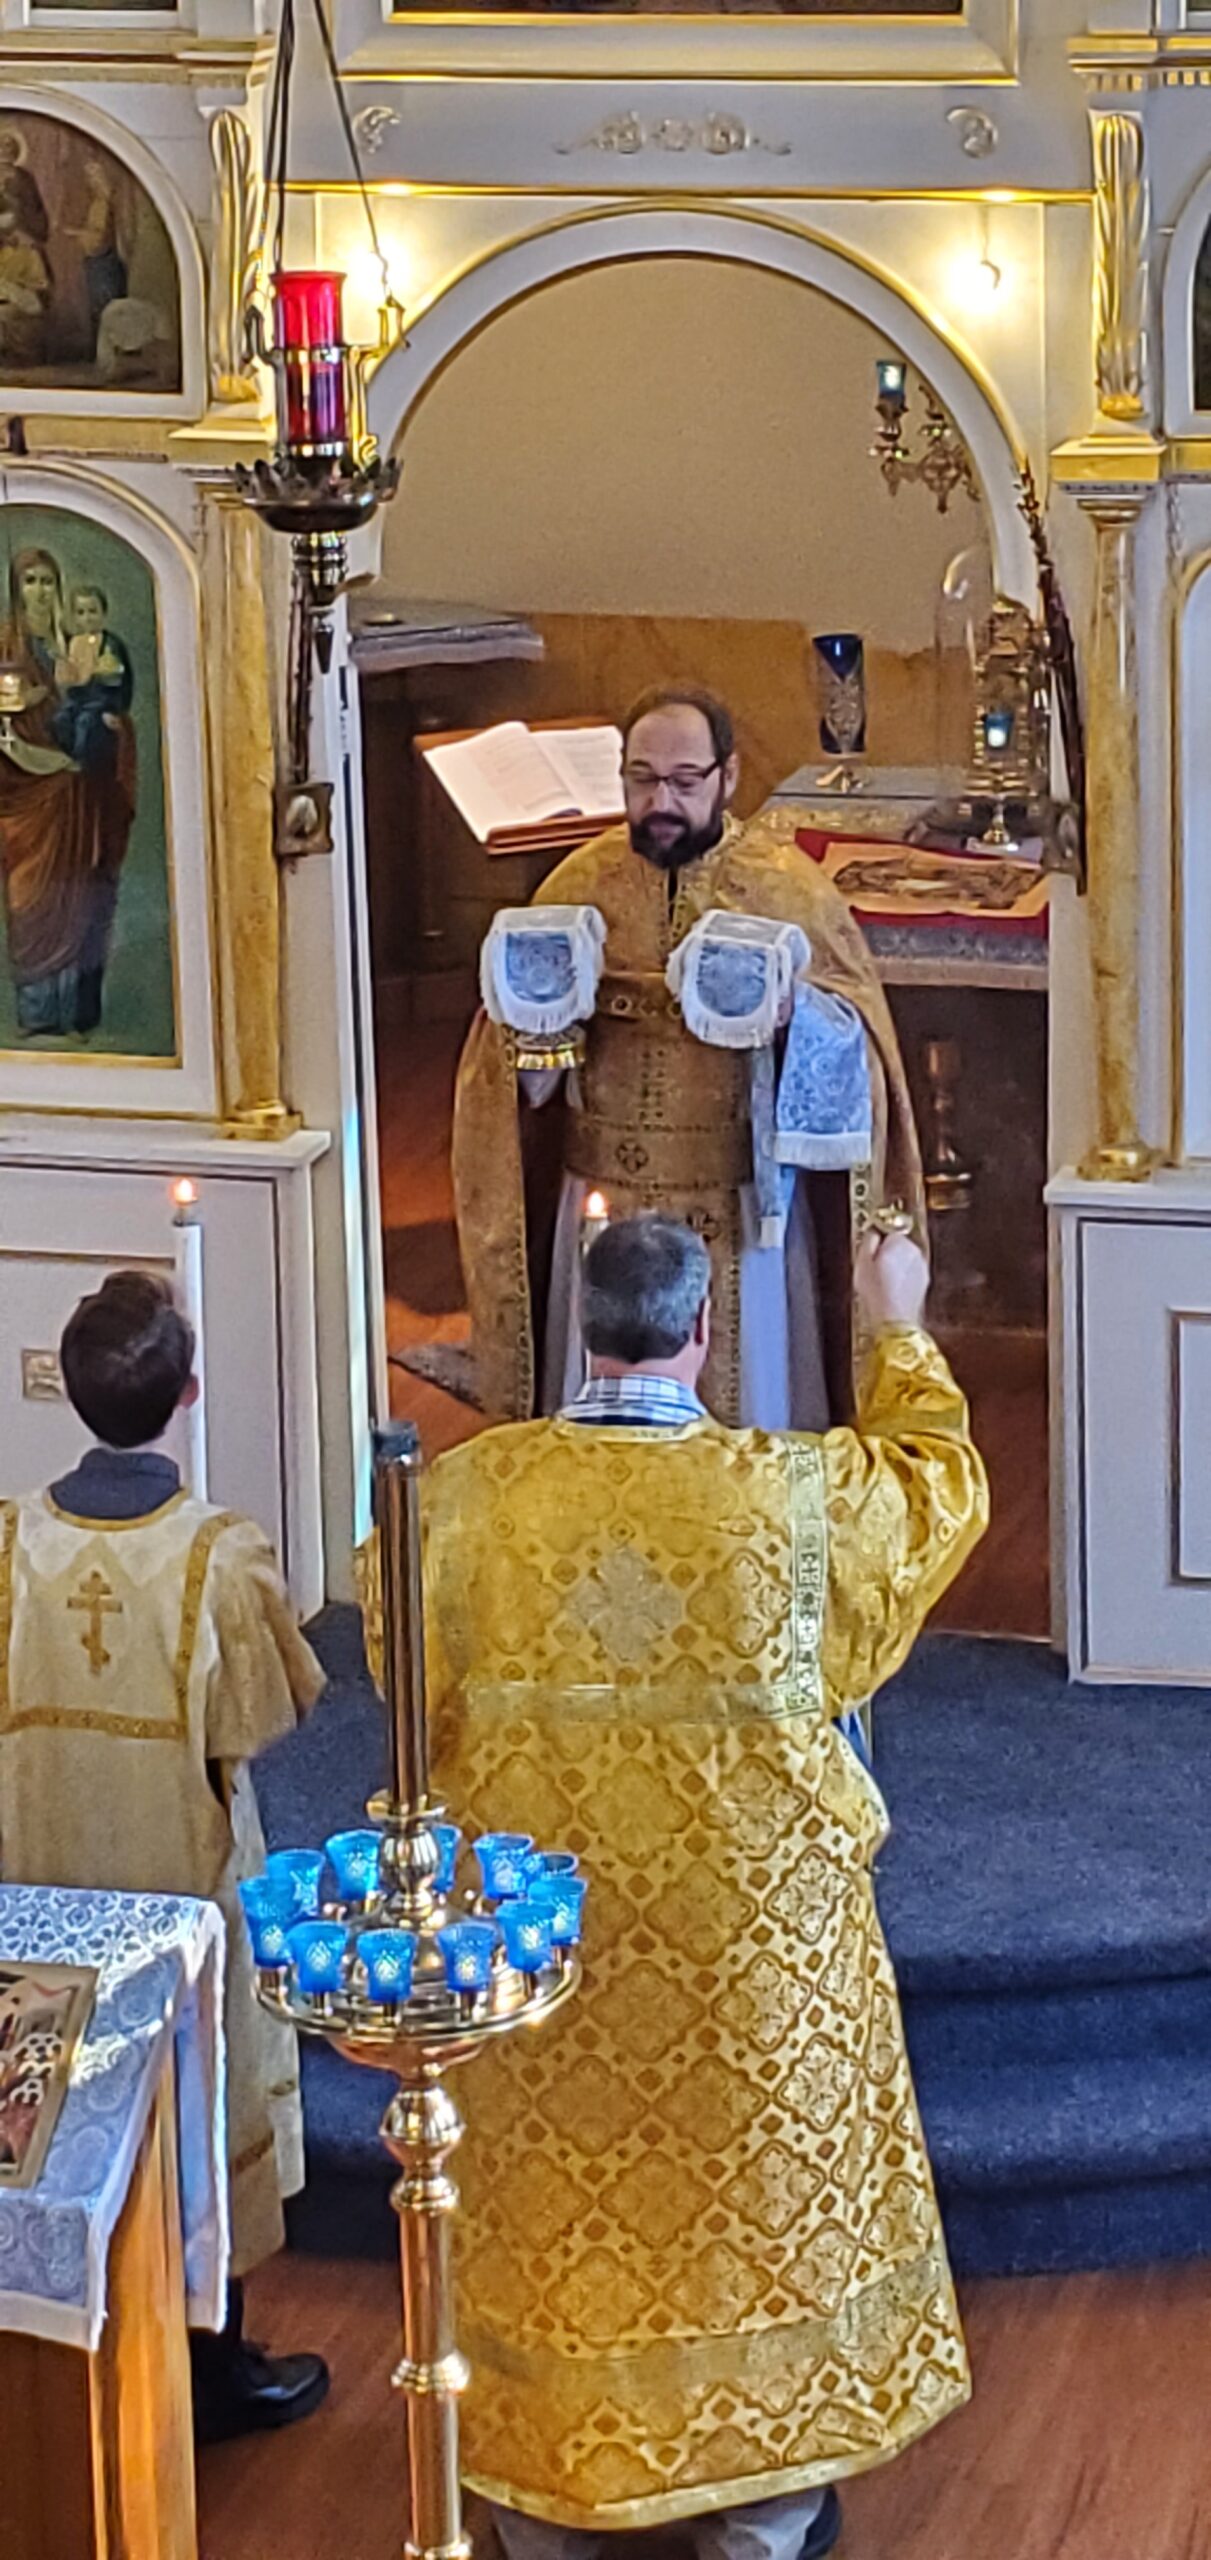 Orthodox priest prepares the Eucharist during Divine Liturgy